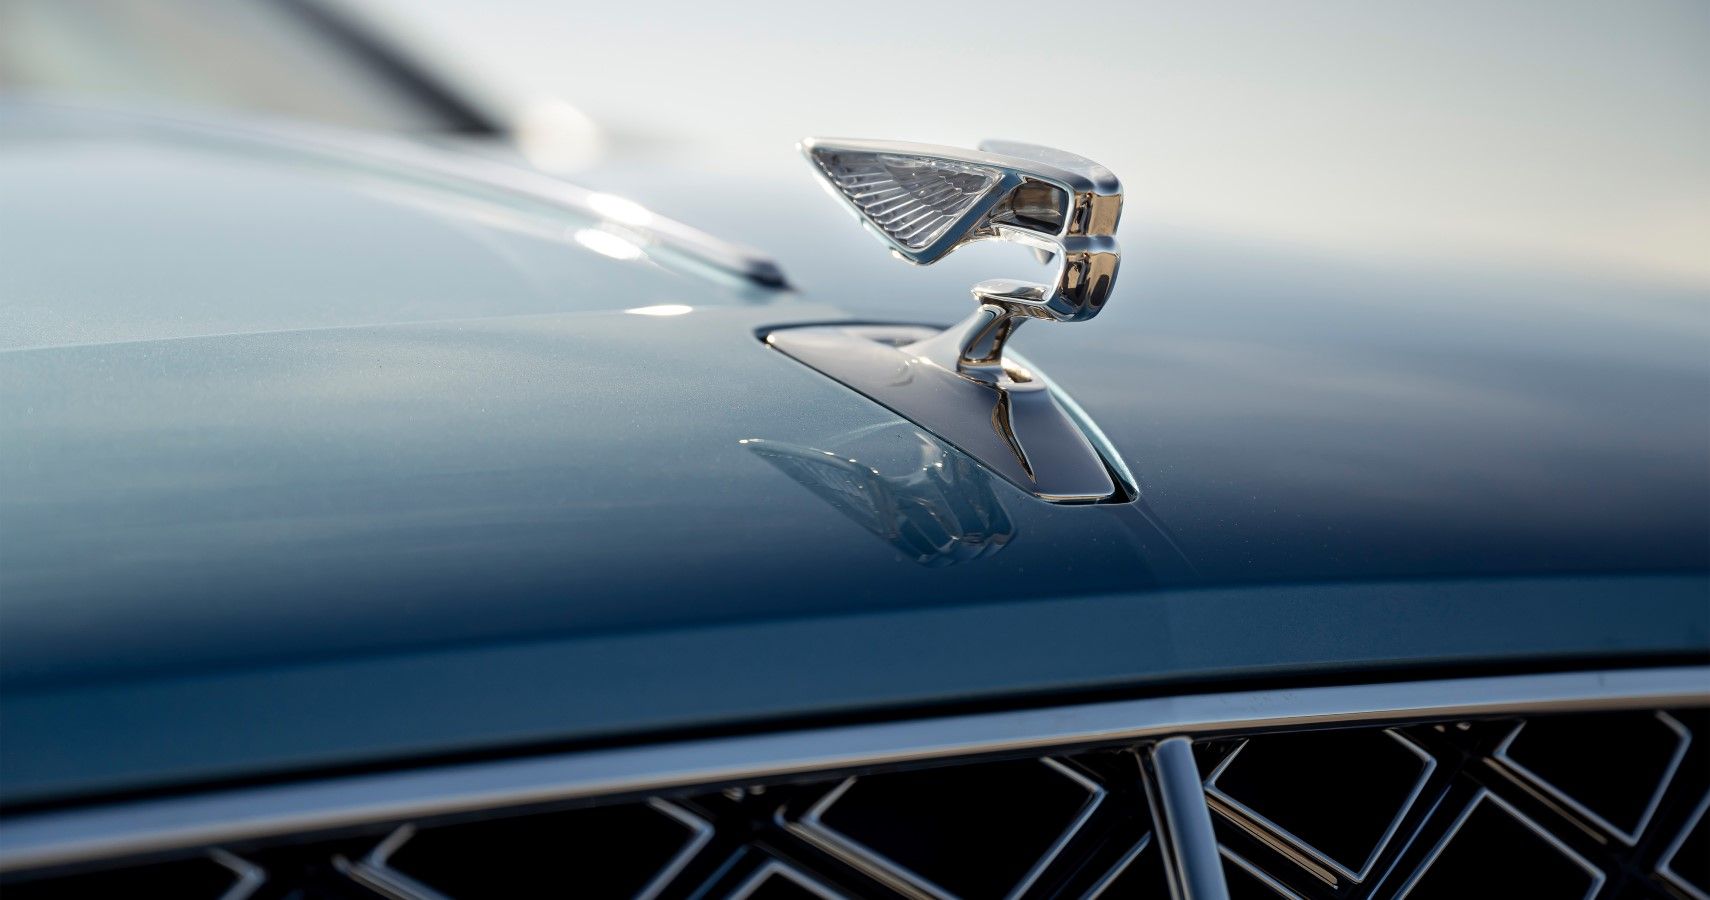 2022 Bentley Flying Spur Mulliner hood emblem close-up view